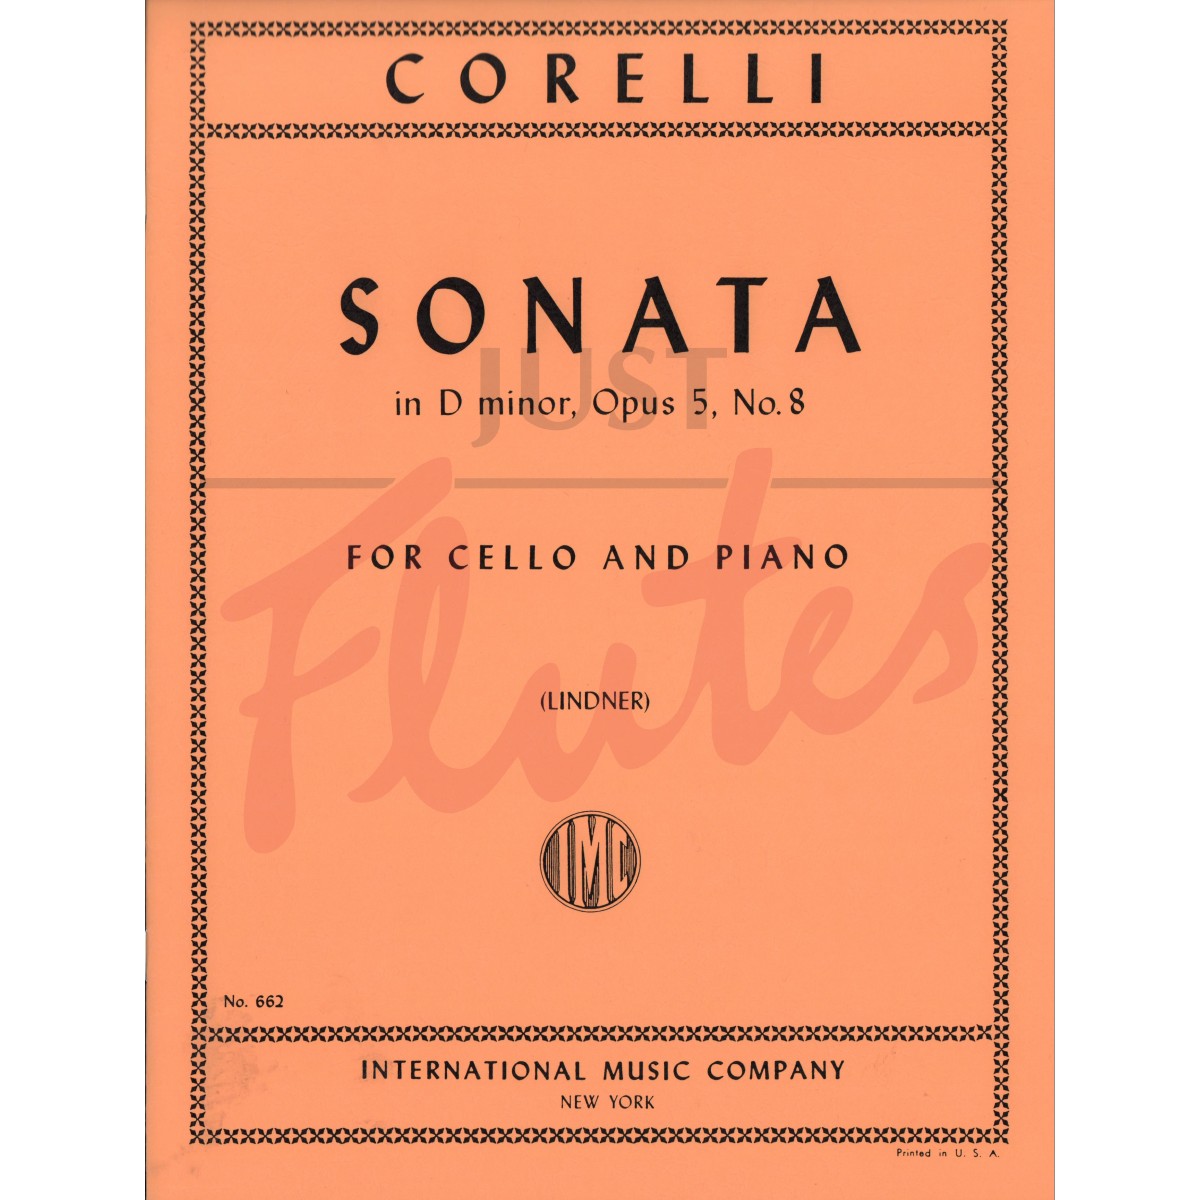 Sonata in D minor for Cello and Piano